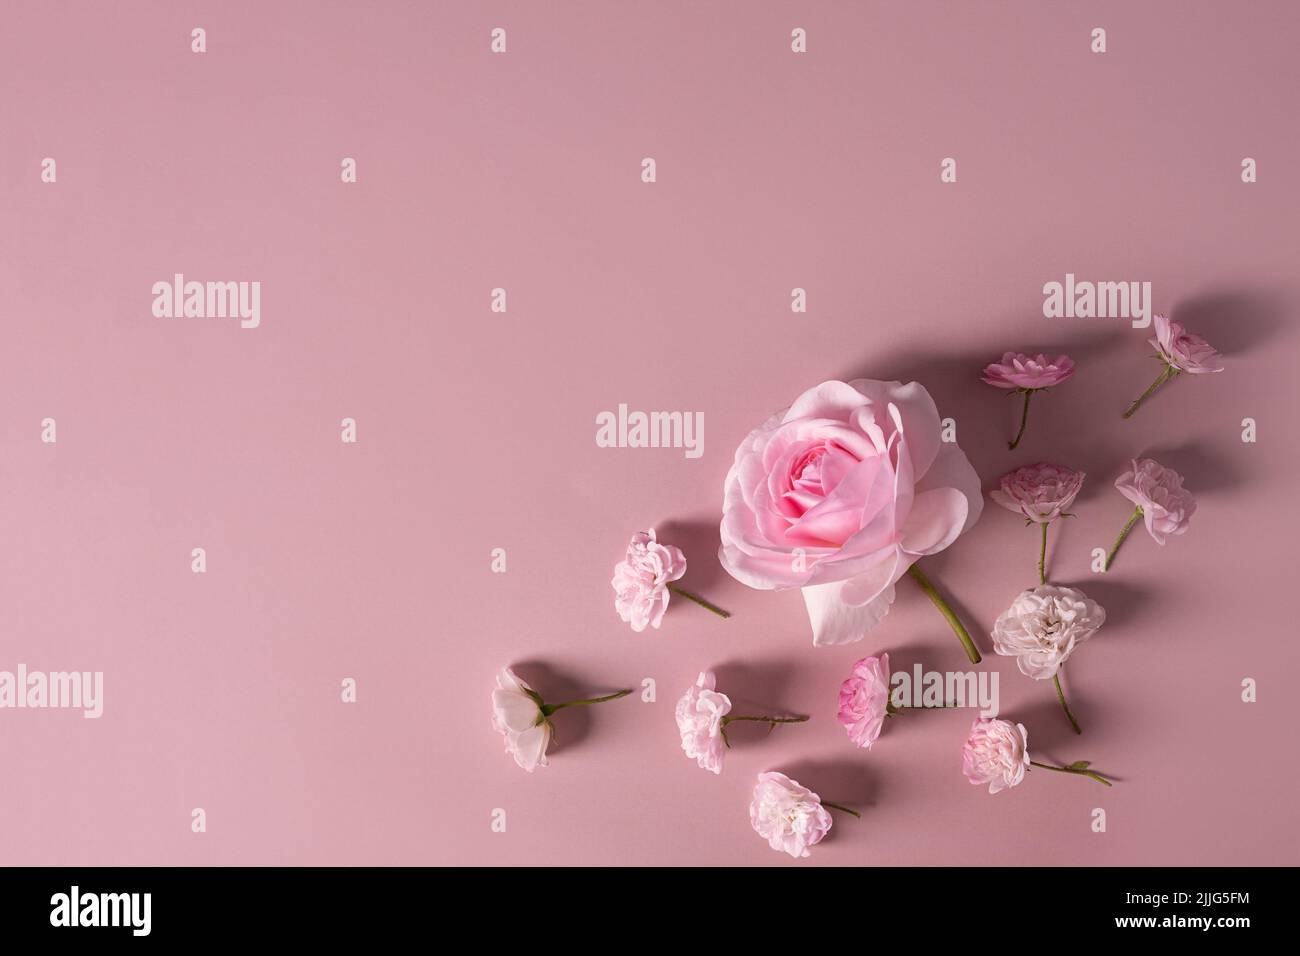 Modello per un romantico biglietto d'auguri con morbide rose rosa pastello su sfondo rosa. Cornice floreale di fiori rosa in fiore. Delicati fes. In fiore Foto Stock